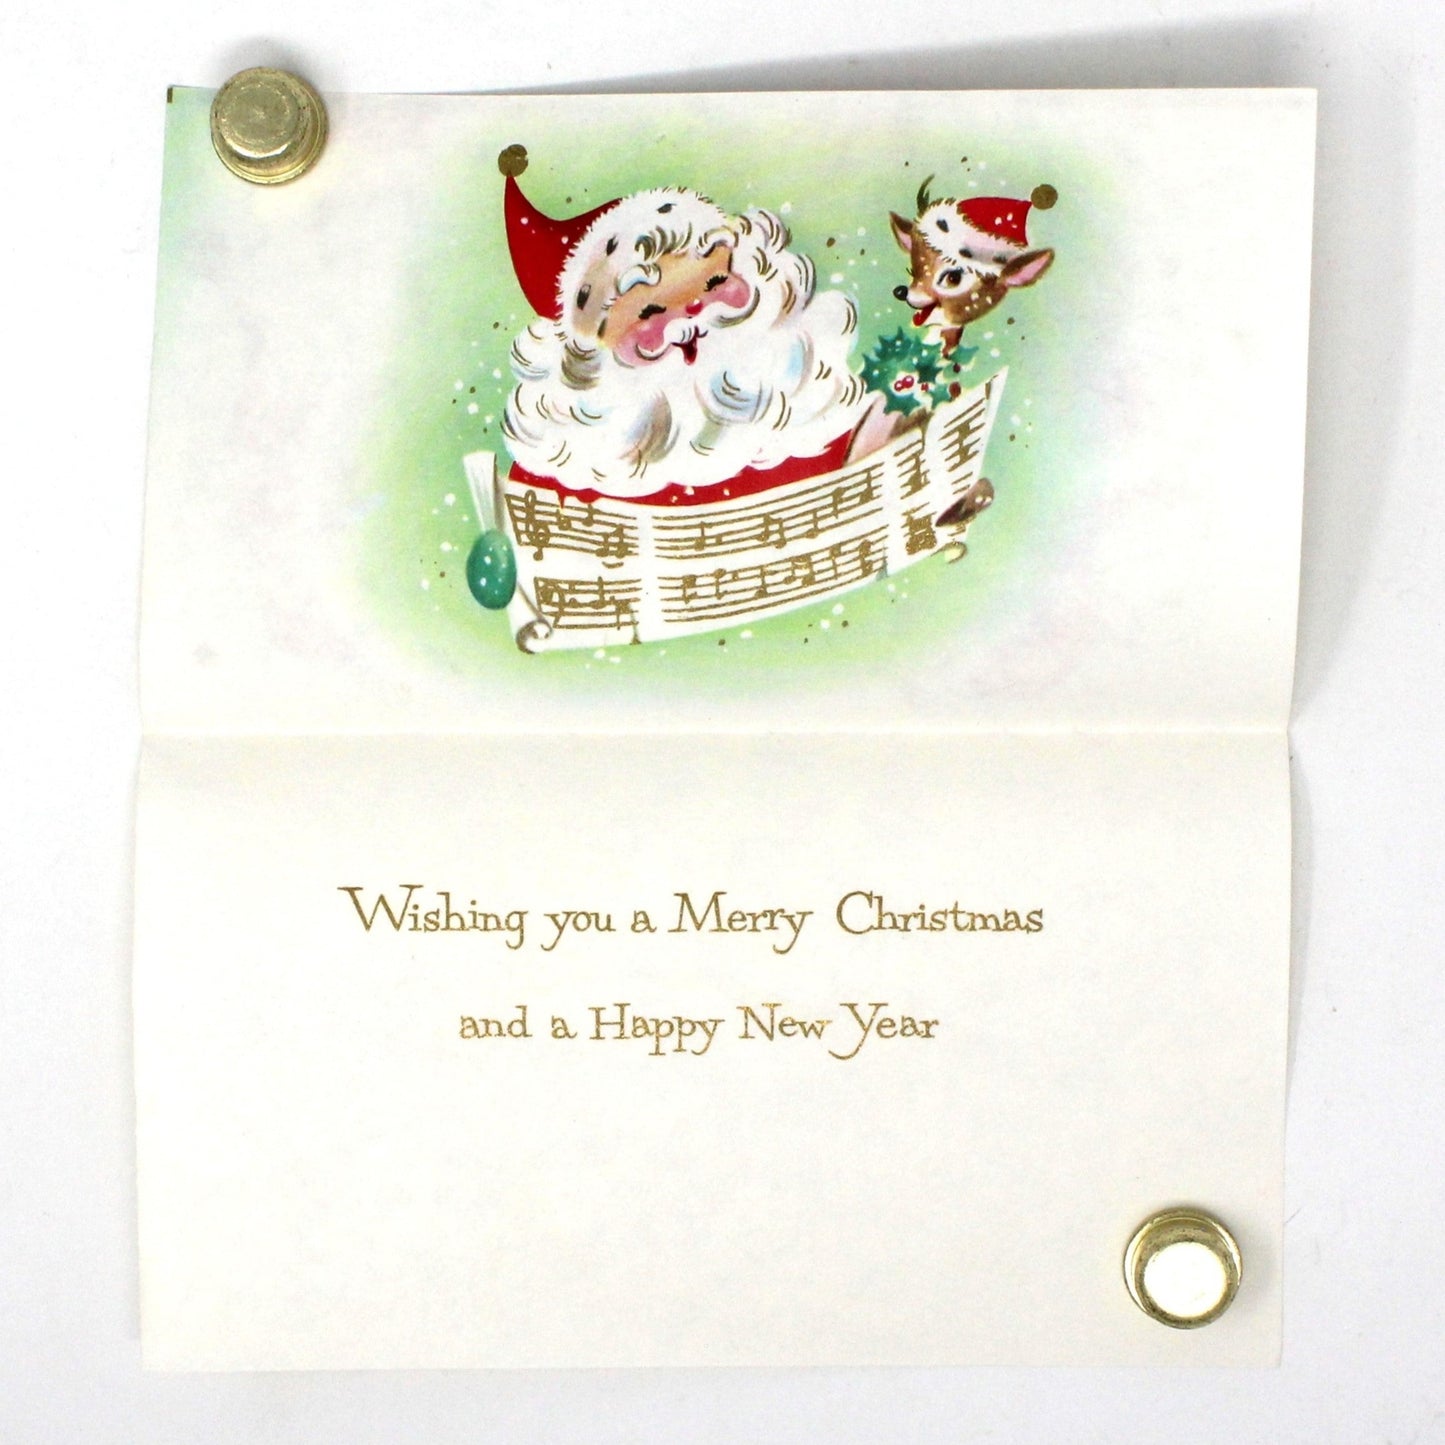 Greeting Card / Christmas Card, Vintage Santa Claus with Reindeer, NOEL, w/Envelope